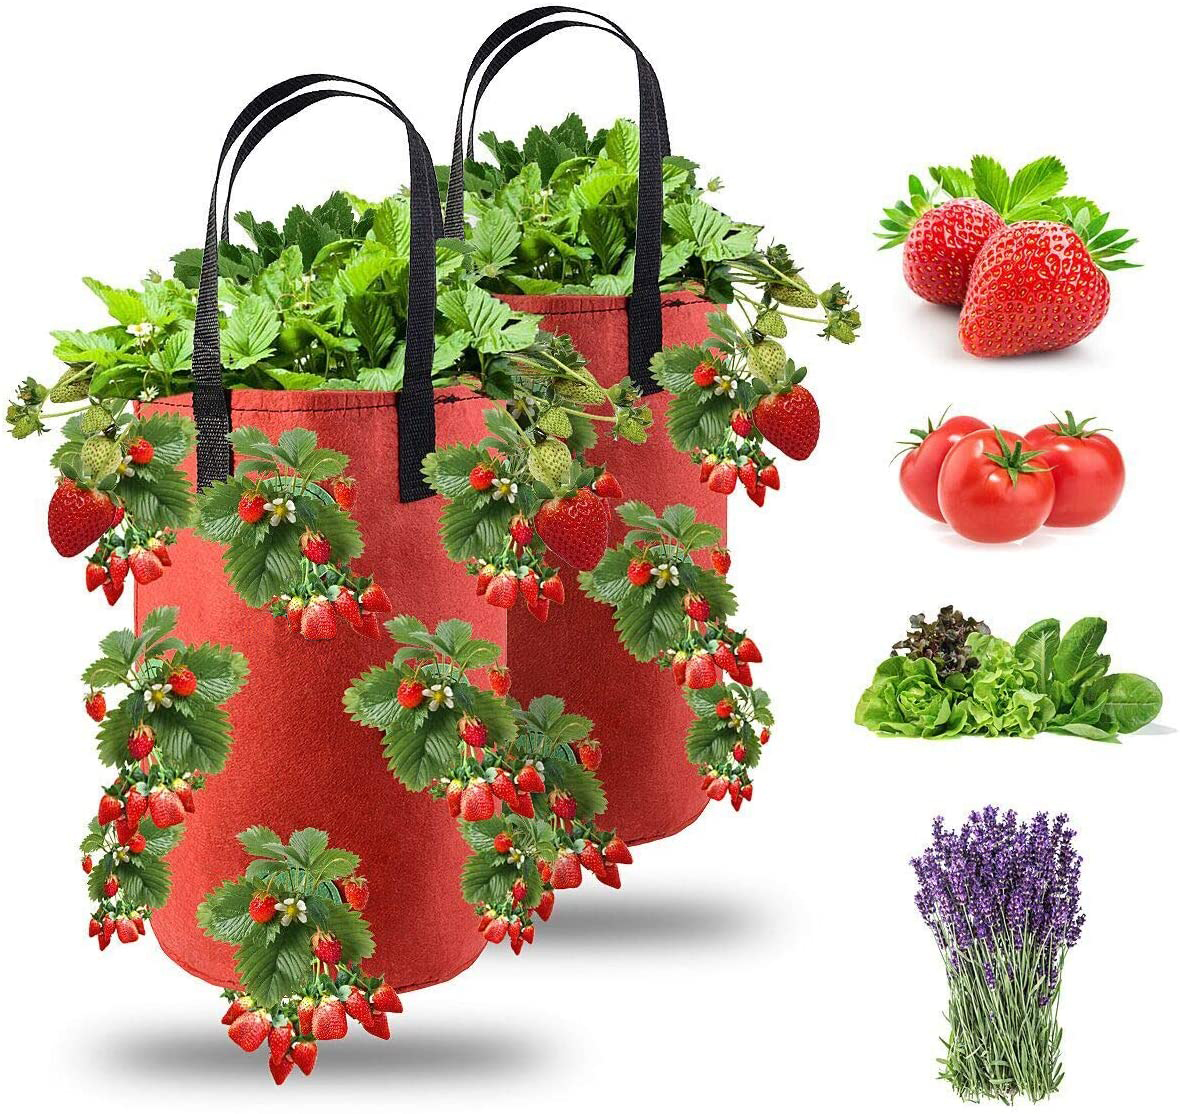 Erdbeer Pflanzbeutel Kartoffel Pflanzsack Gartenpflanzung Gemüse Pflanzer Tasche 